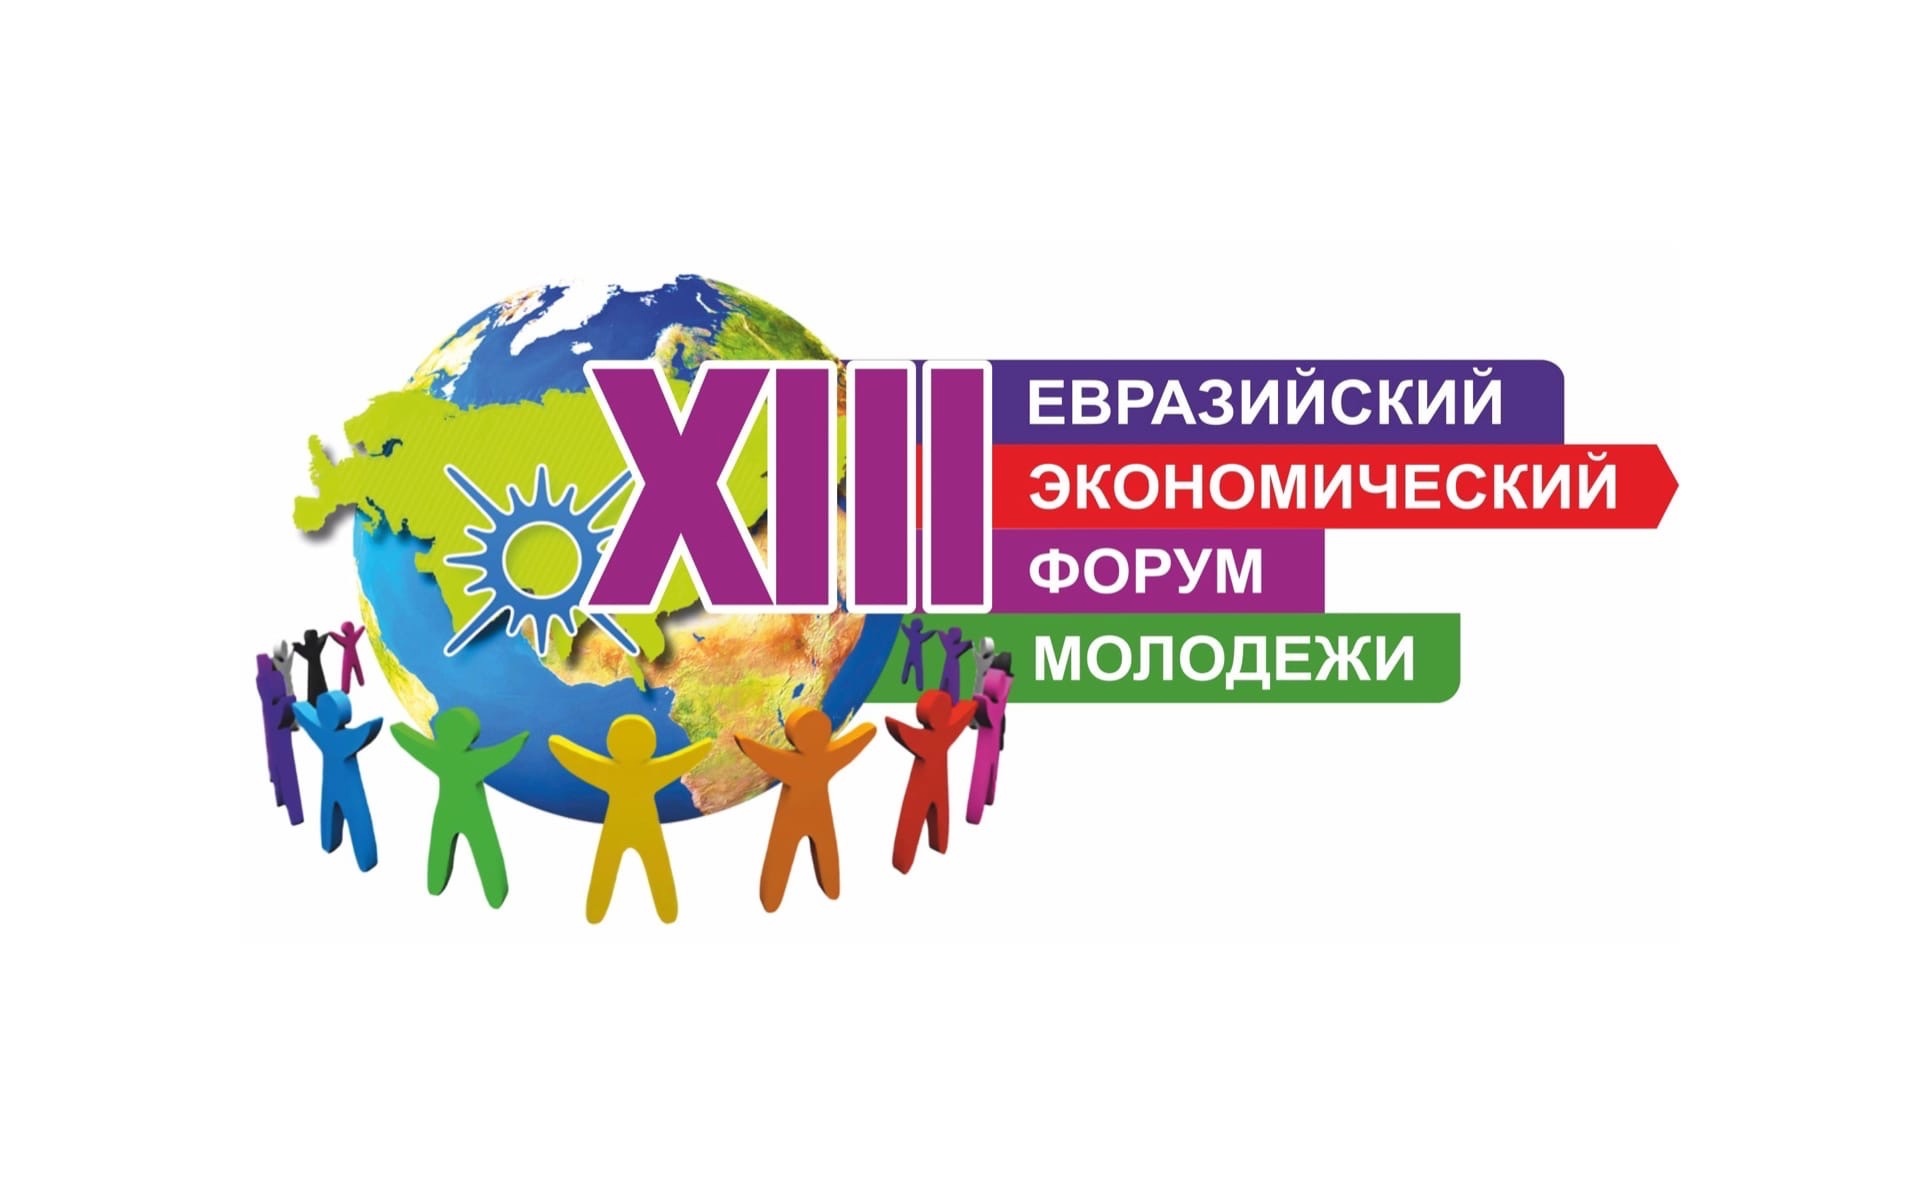 Логотип ЕЭФМ